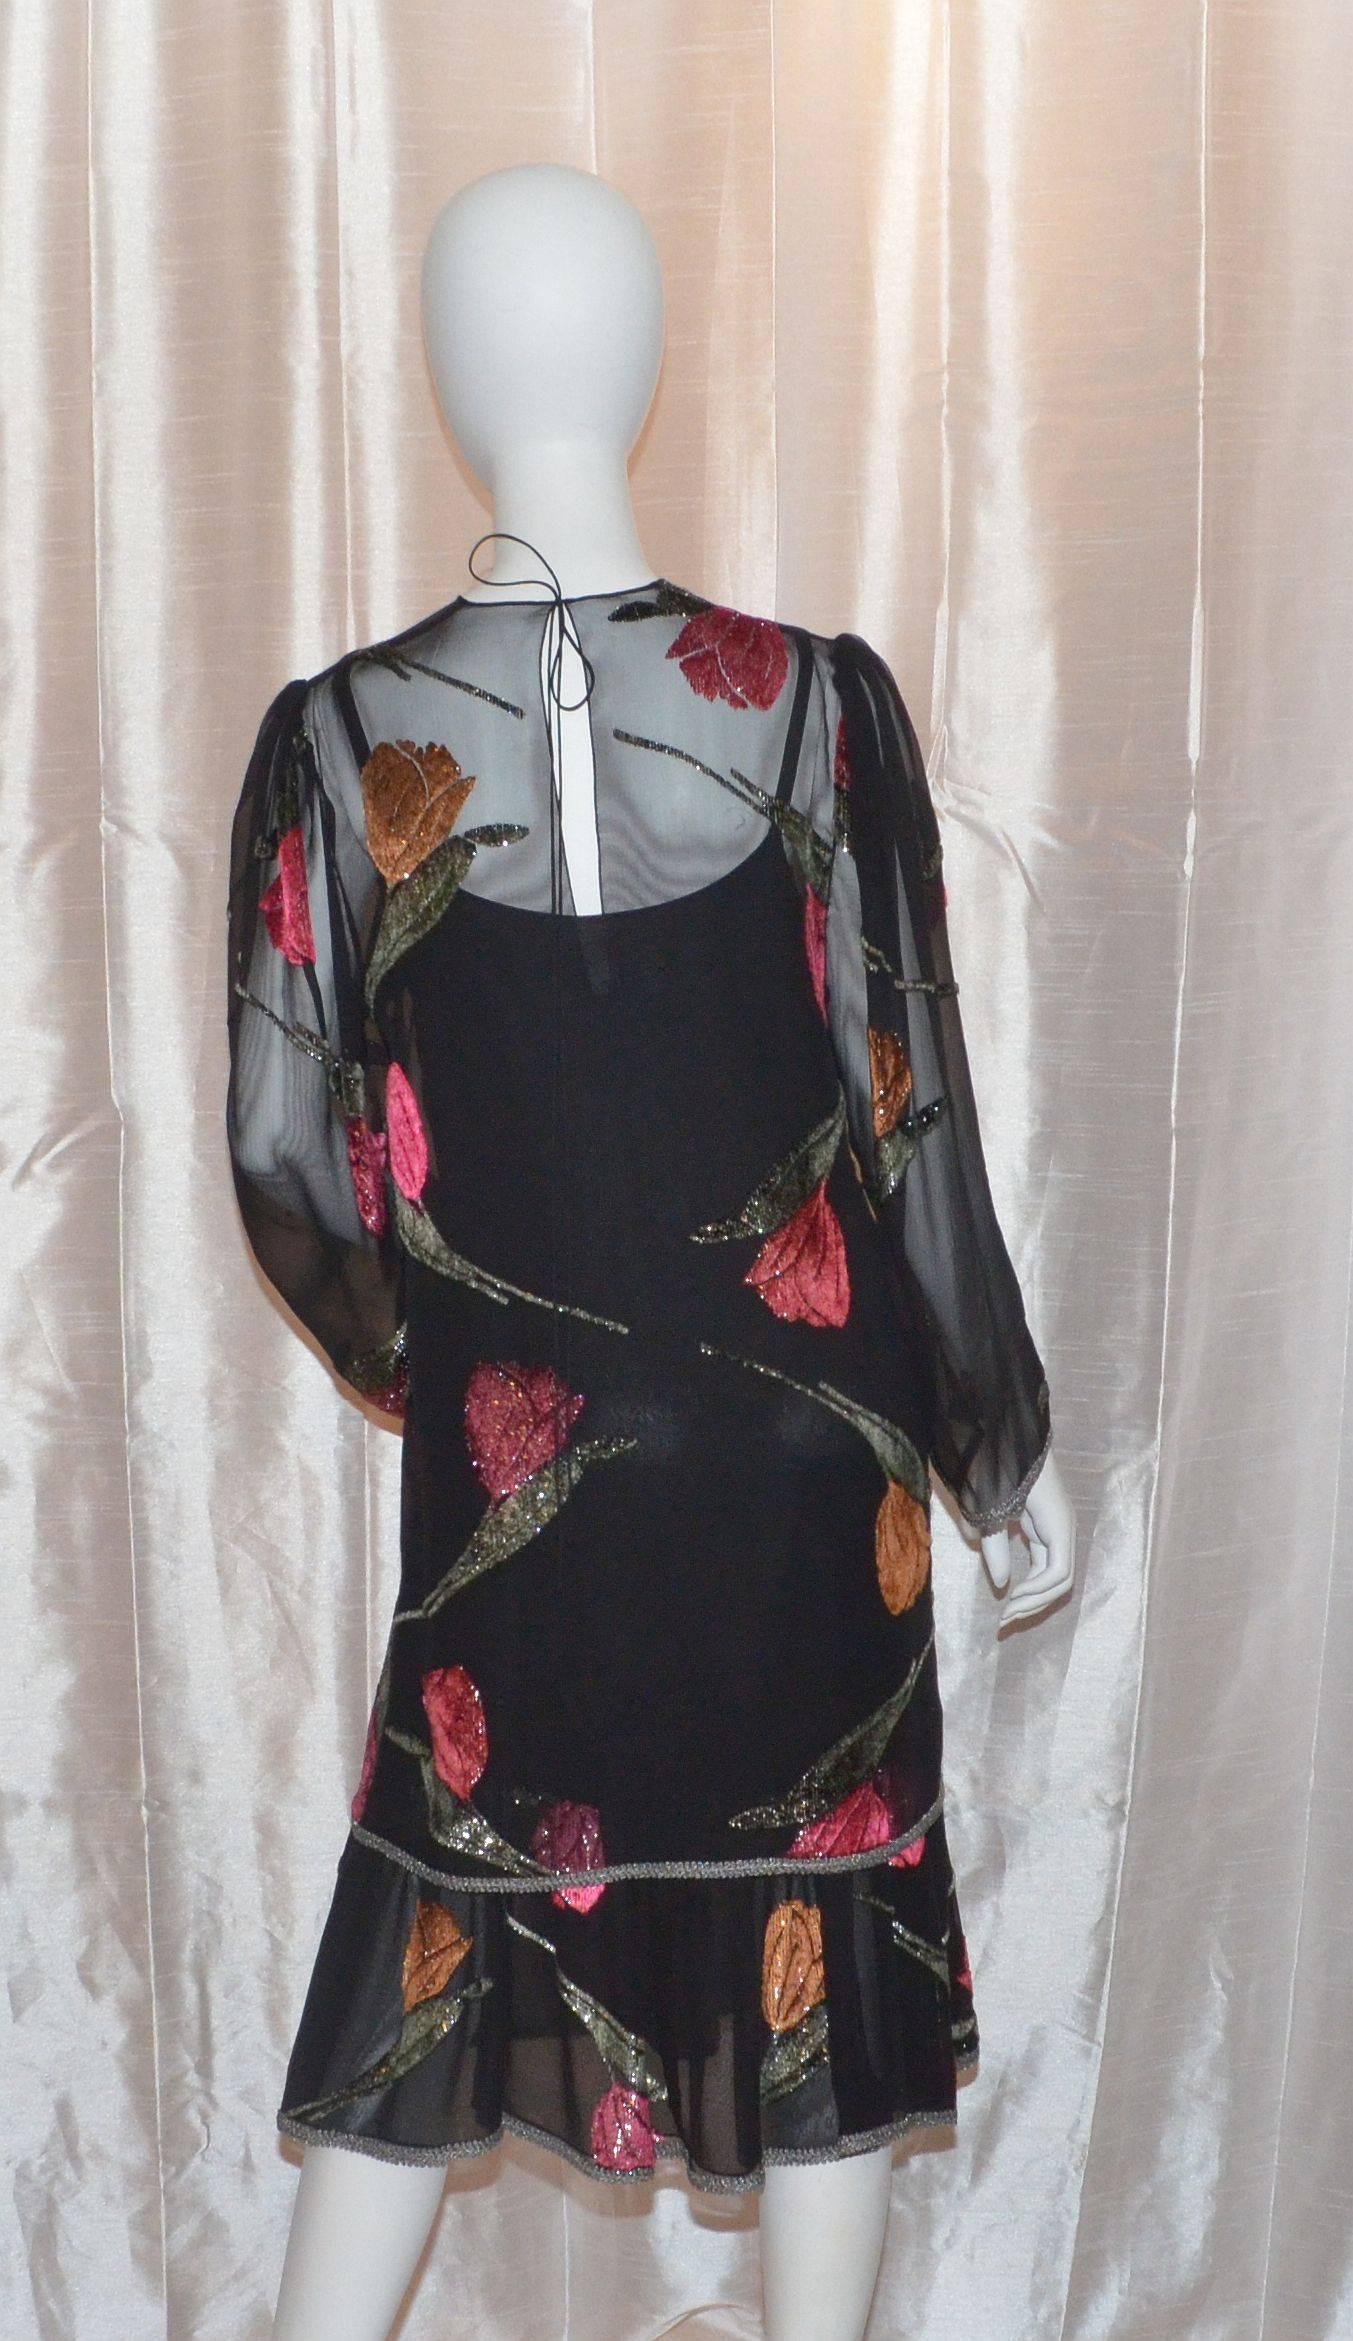 La robe 2 pièces de Pauline Trigere est faite de mousseline de soie et est ornée de fleurs en velours rose. La robe (couche inférieure) a des bretelles spaghetti réglables, une fermeture à glissière latérale et une taille basse en jersey noir mat